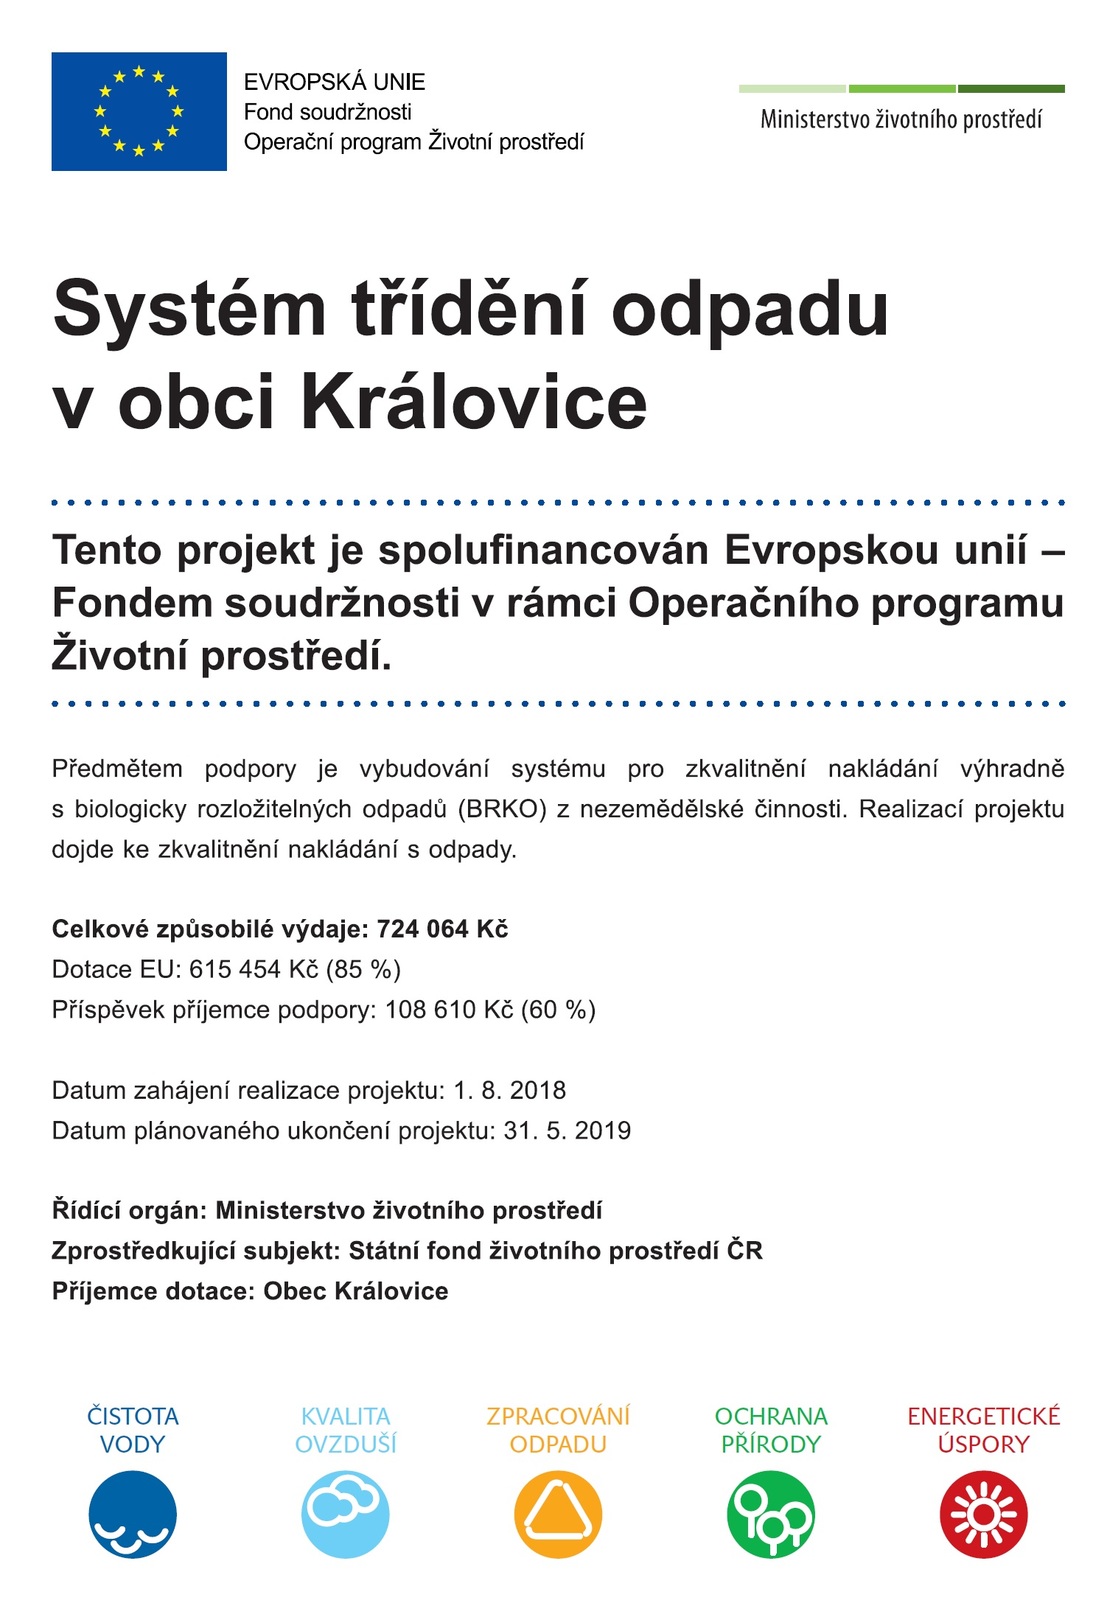 Publicita_Systém třídění odpadu v obci Královice.jpg